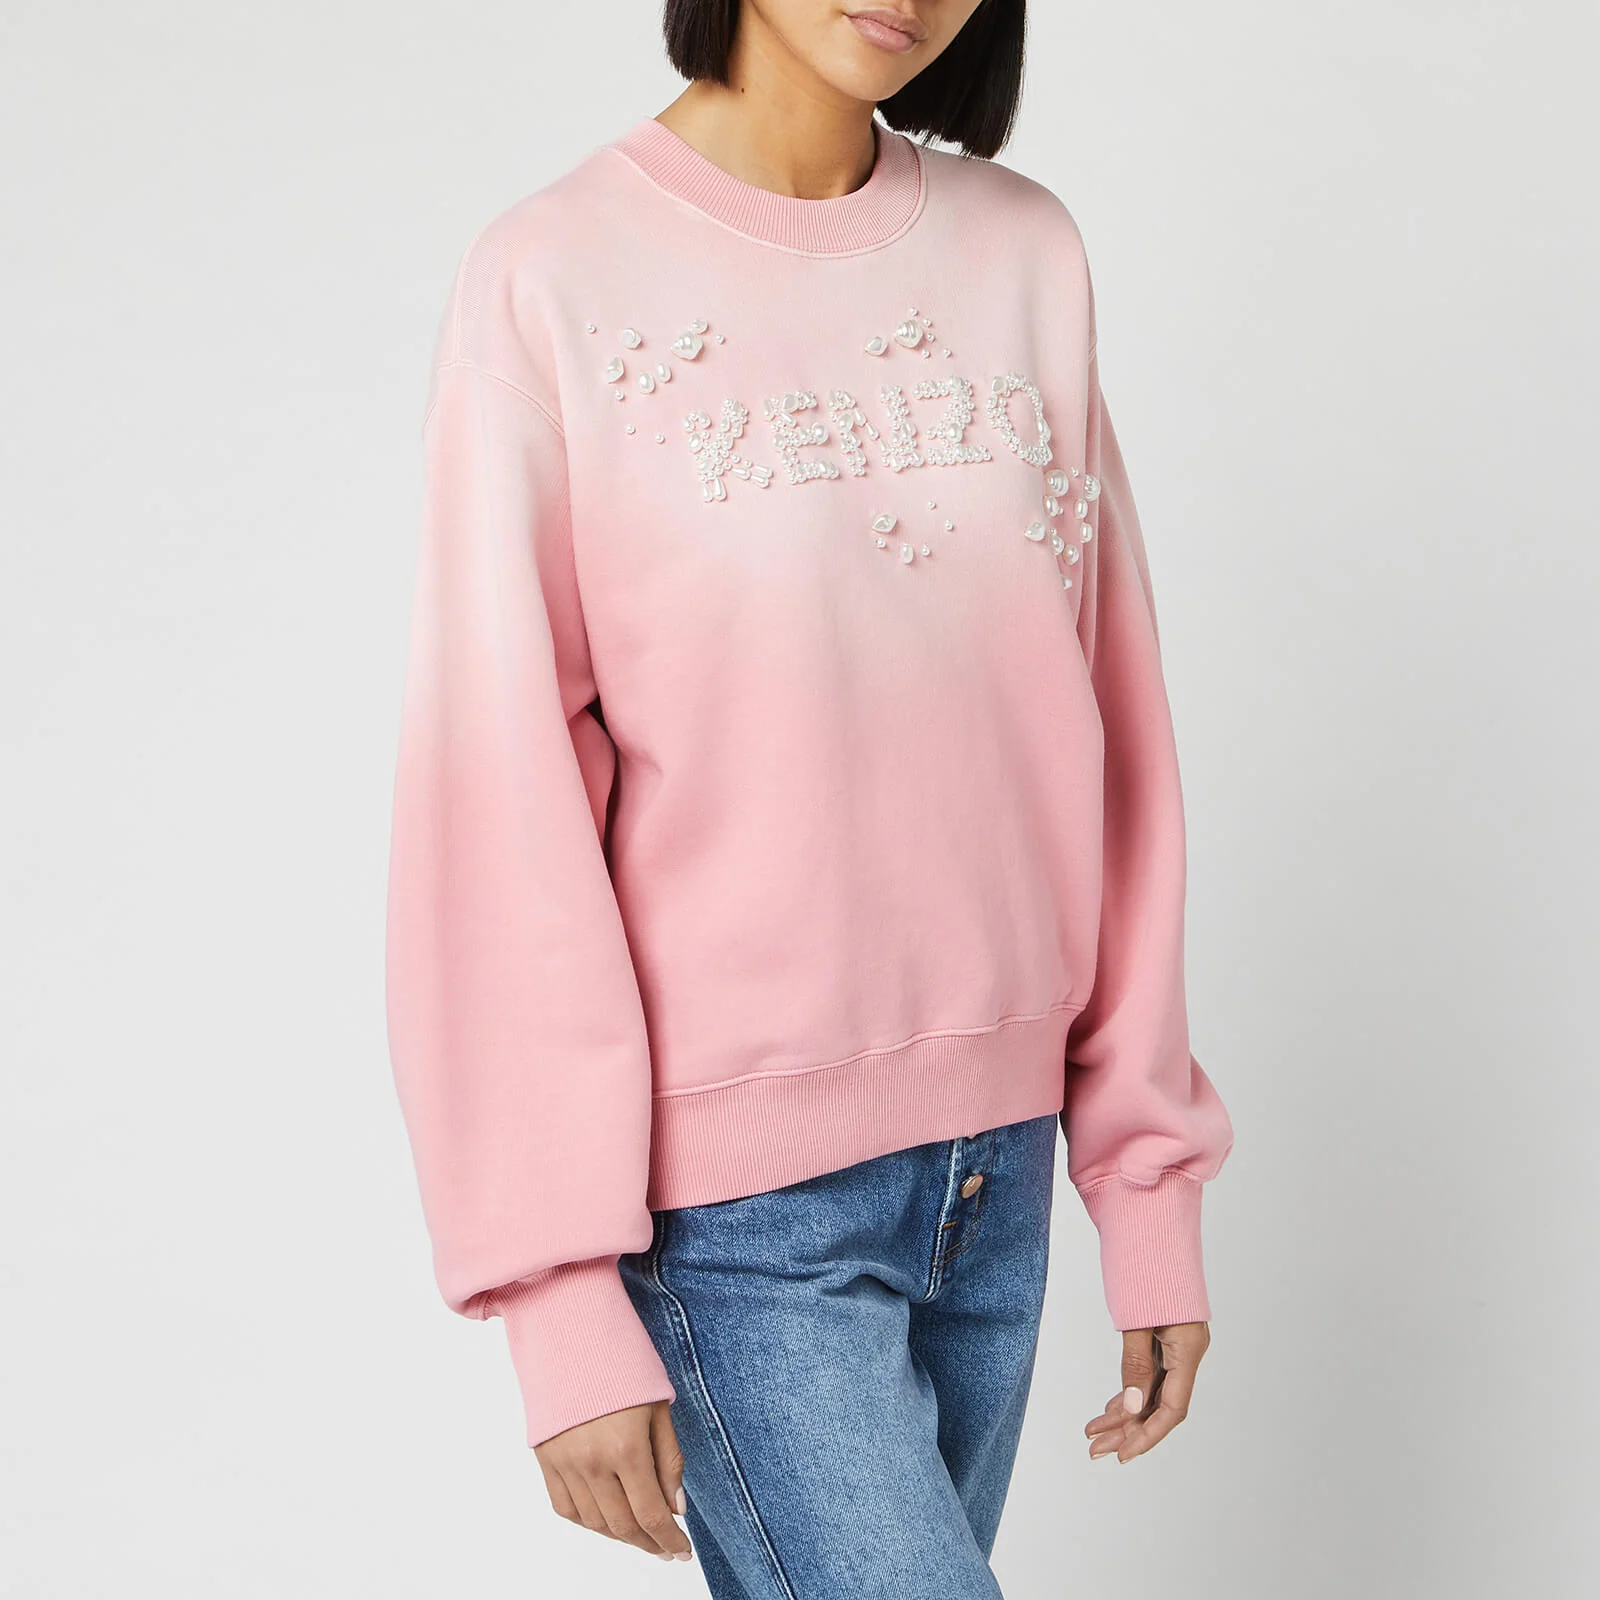 KENZO Women's Bubble Sweatshirt with Pearls Logo - Flamingo Pink Image 1